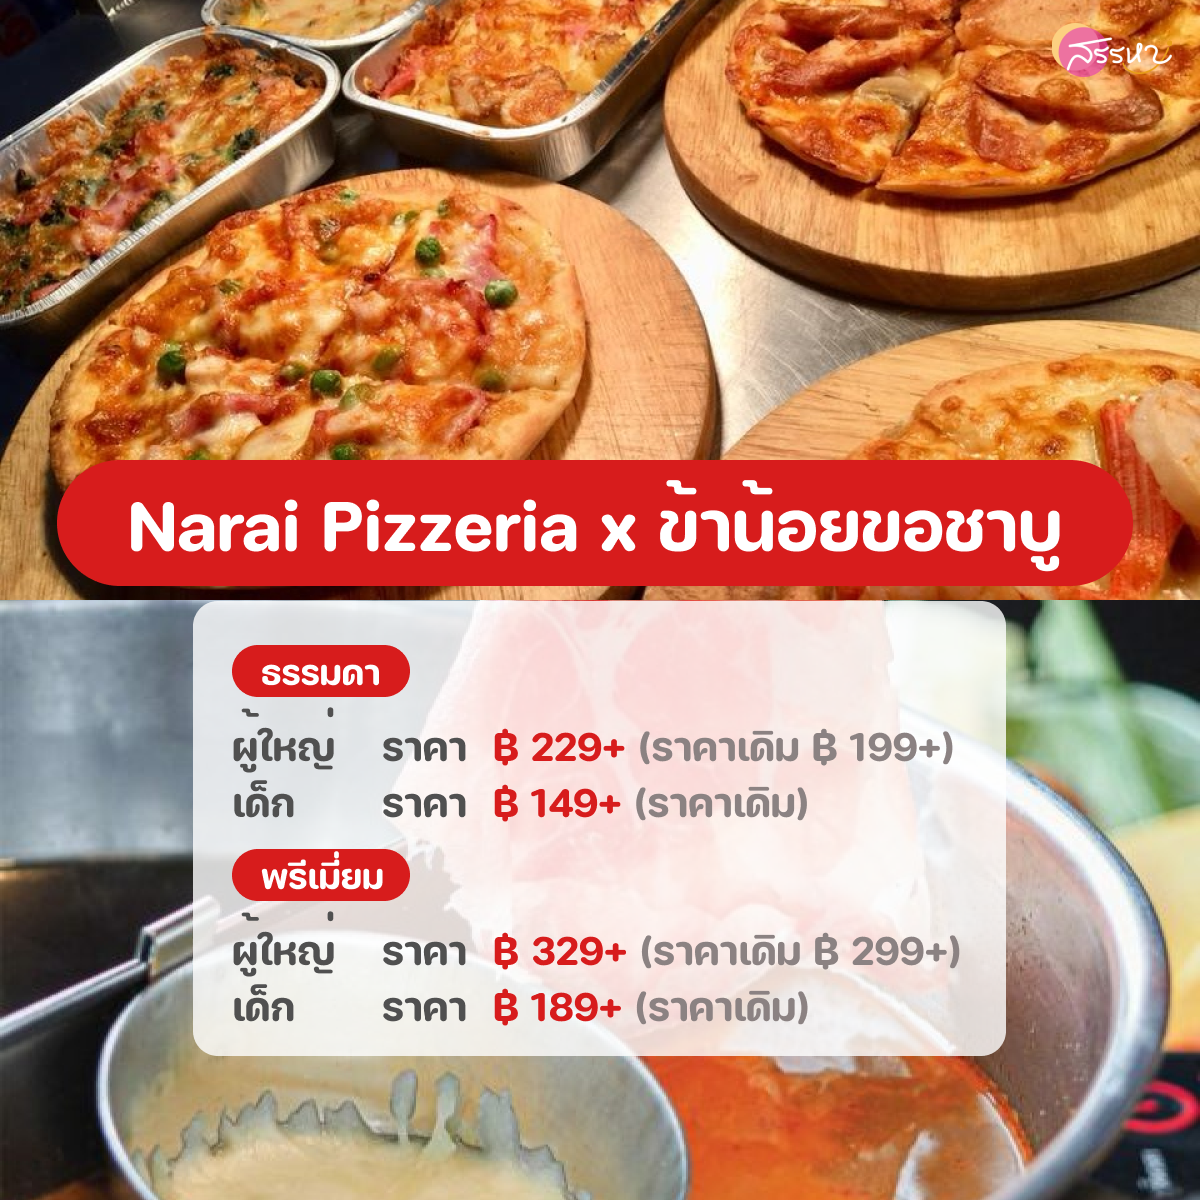 อัปเดตราคาบุฟเฟต์ปี 2022-Narai Pizzeria x ข้าน้อยขอชาบู